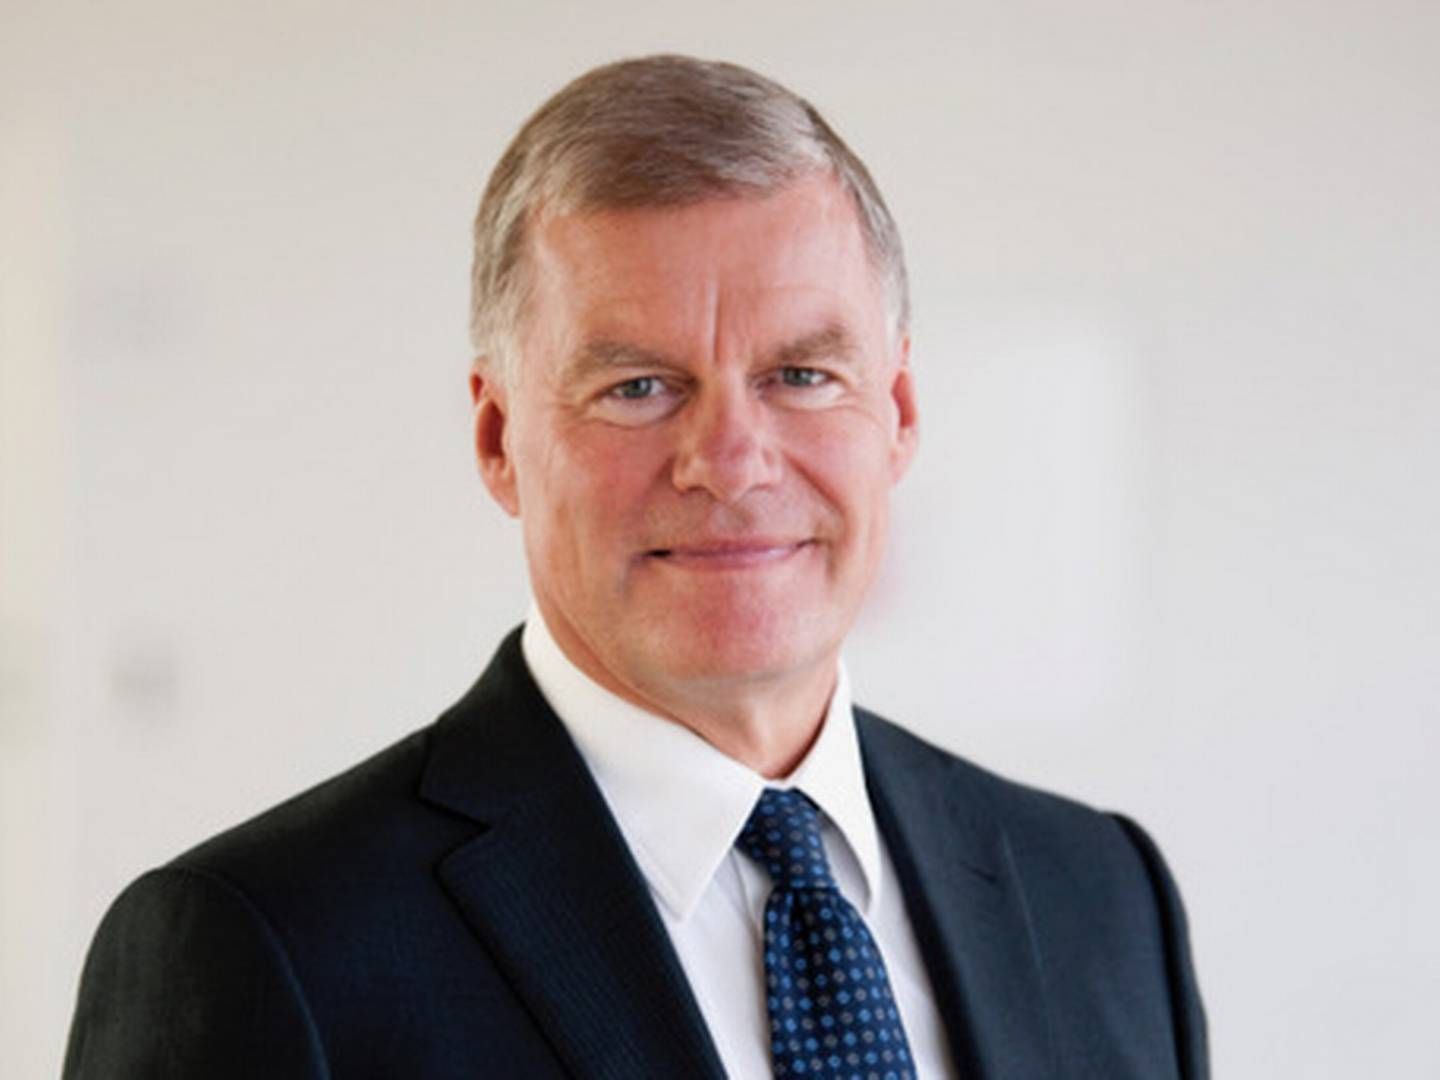 Ole F. Ramsby har været juridisk direktør hos Novo Nordisk i 21 år. Han håber på mere juridsk arbejde og bestyrelsesposter fremover. | Foto: Novo Nordisk PR